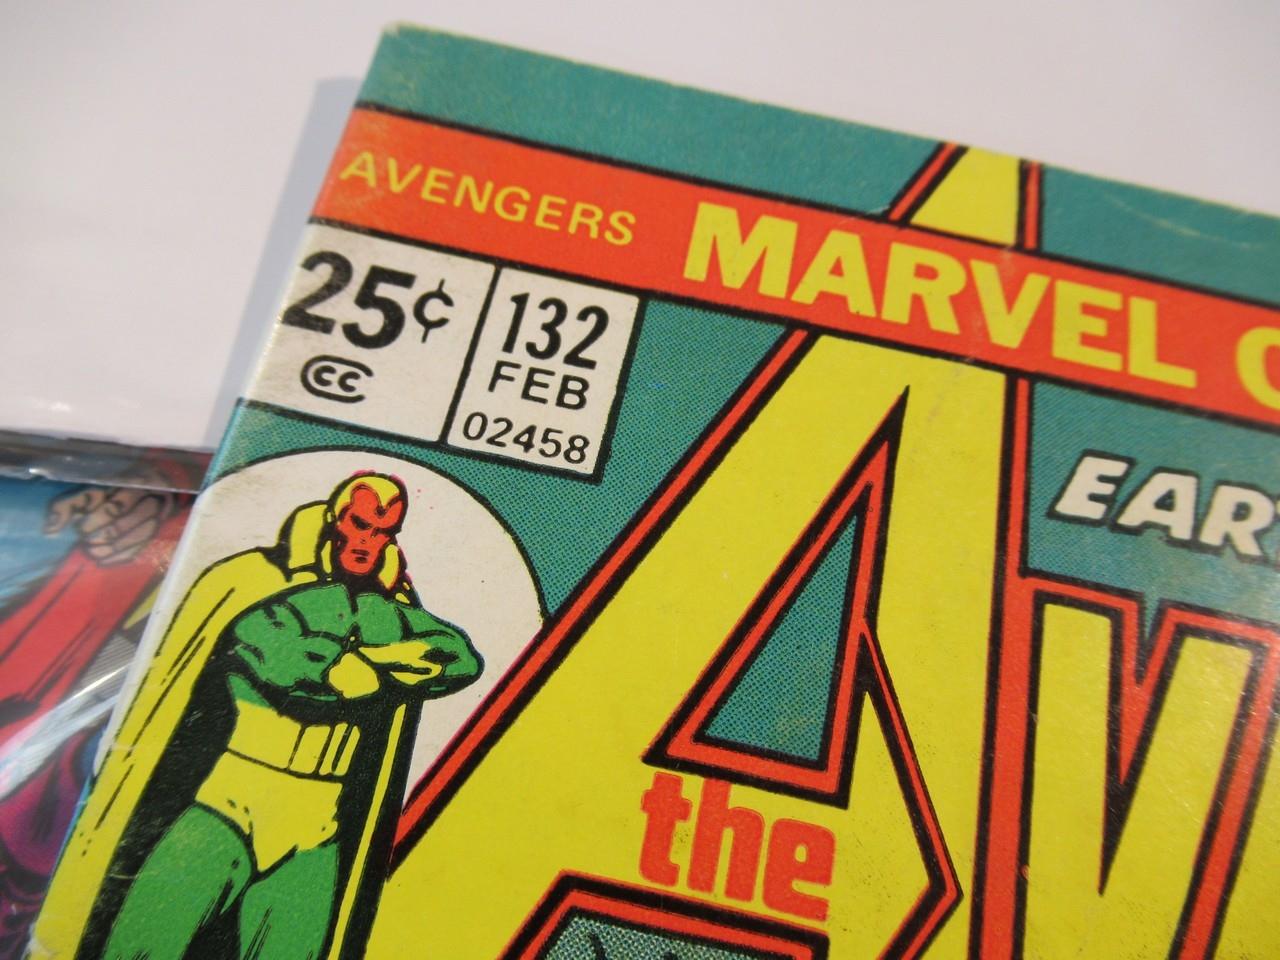 Avengers #131/132/133